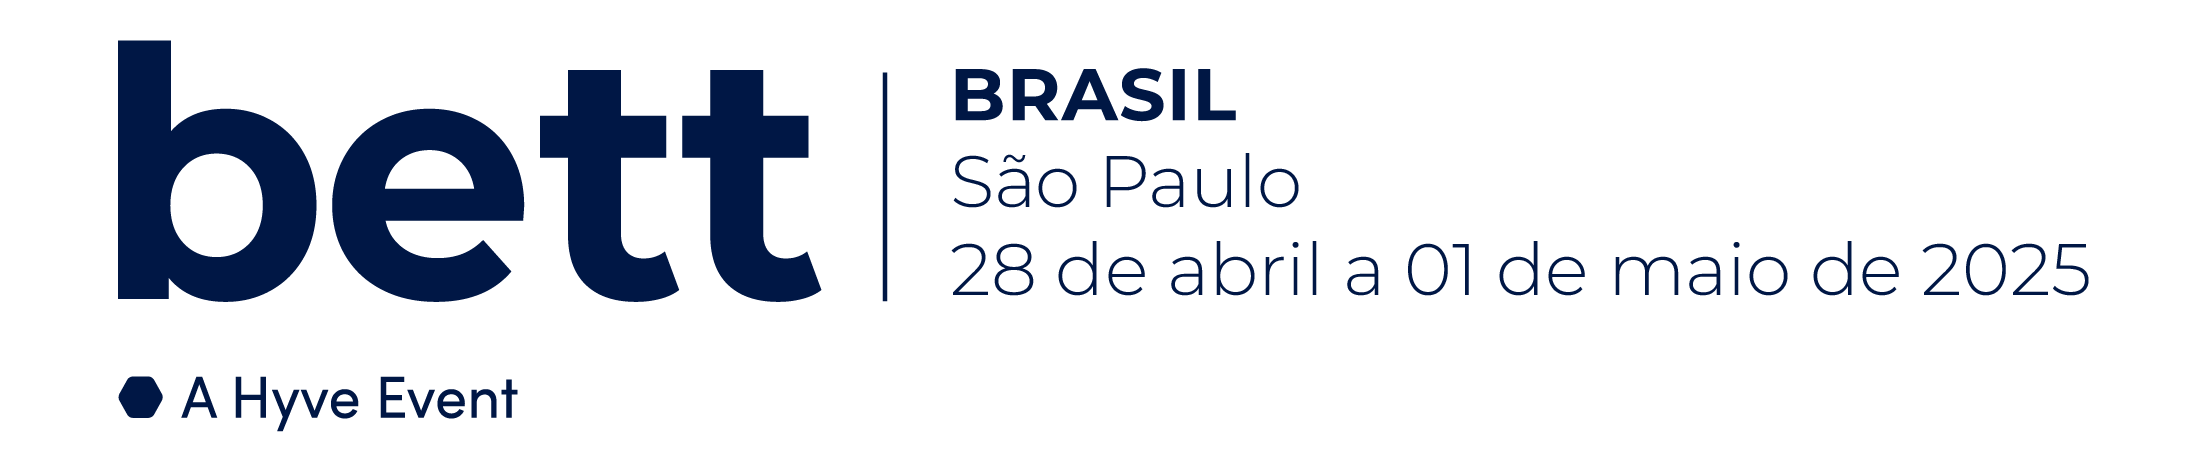 bett_brasil